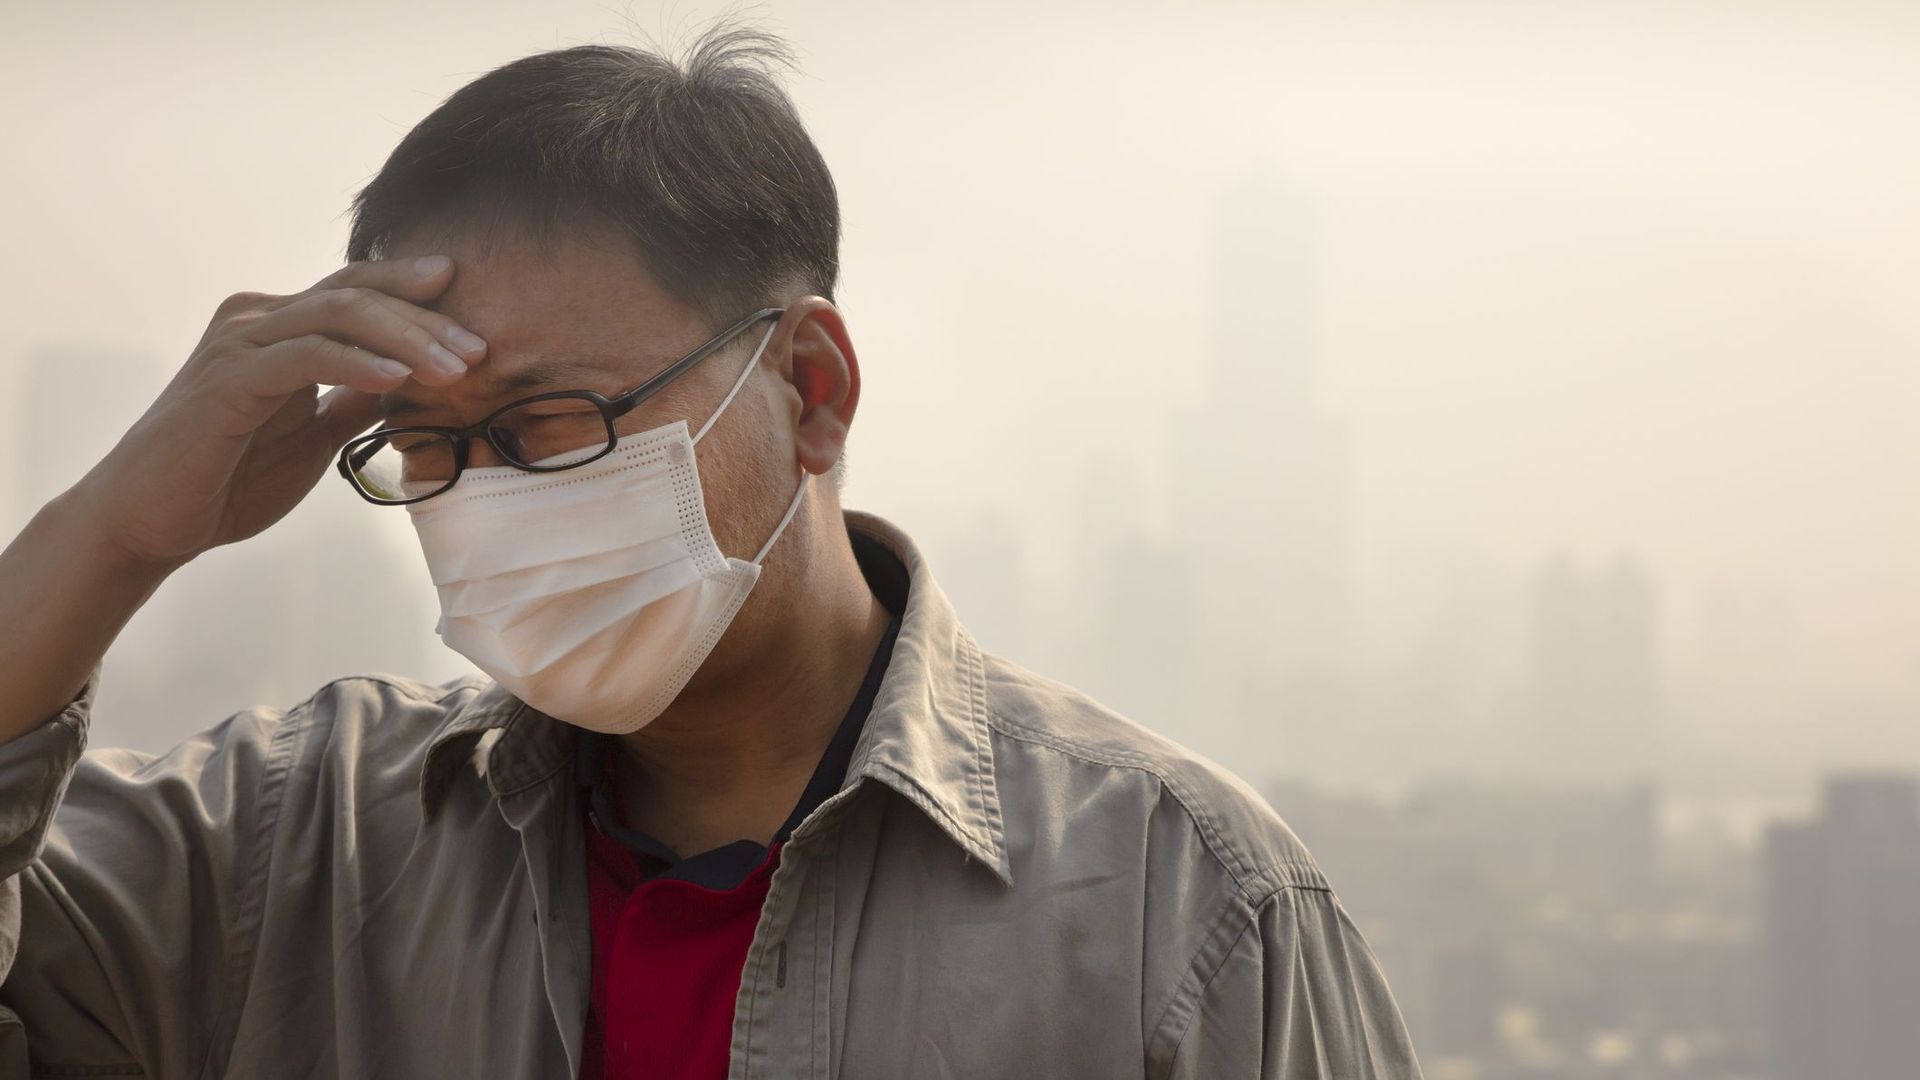 Neuf personnes sur dix dans le monde respirent un air pollué